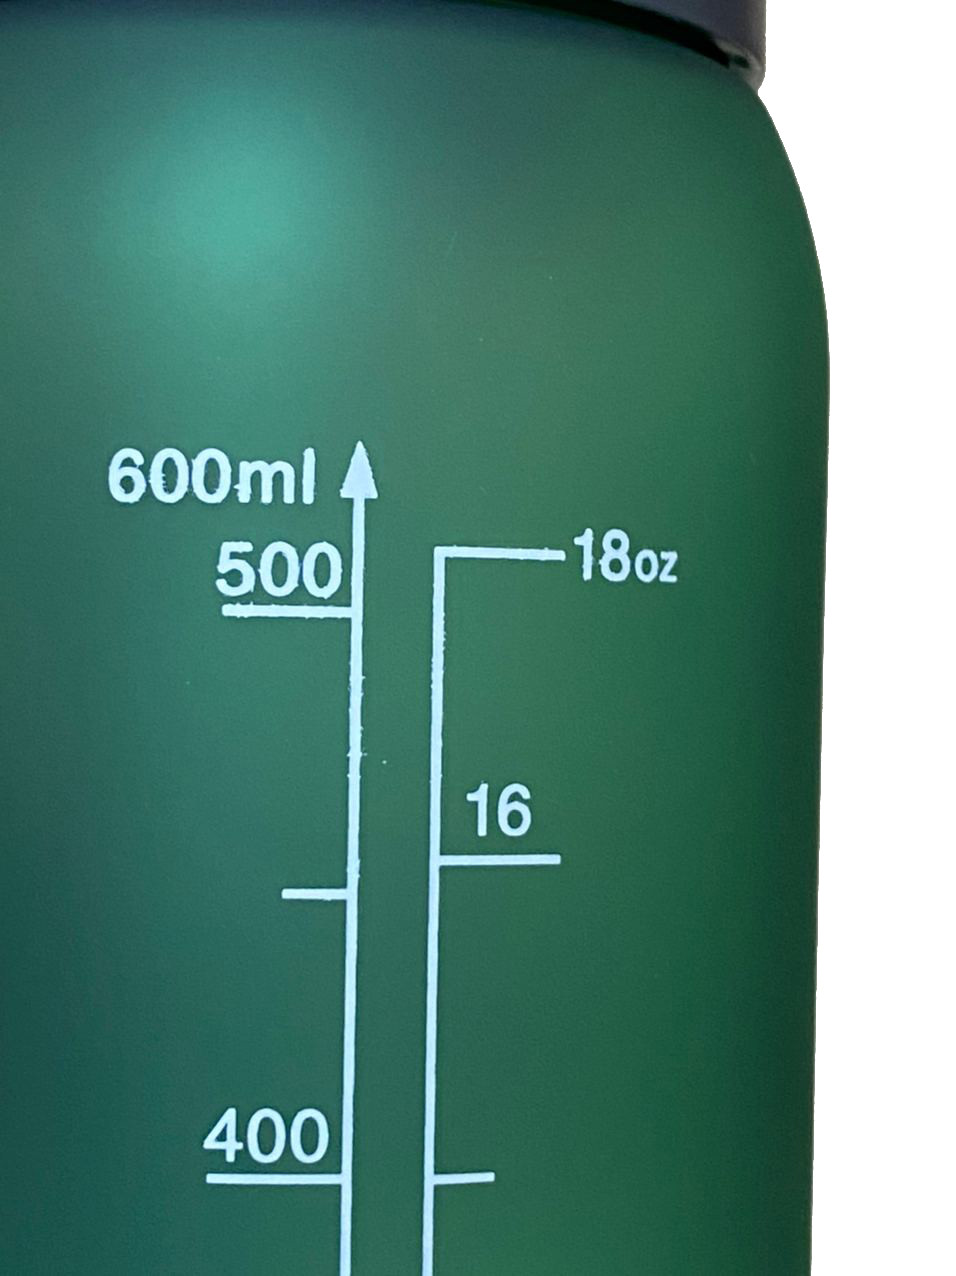 Бутылка для воды CASNO 600 мл KXN-1196 Зеленая с соломинкой